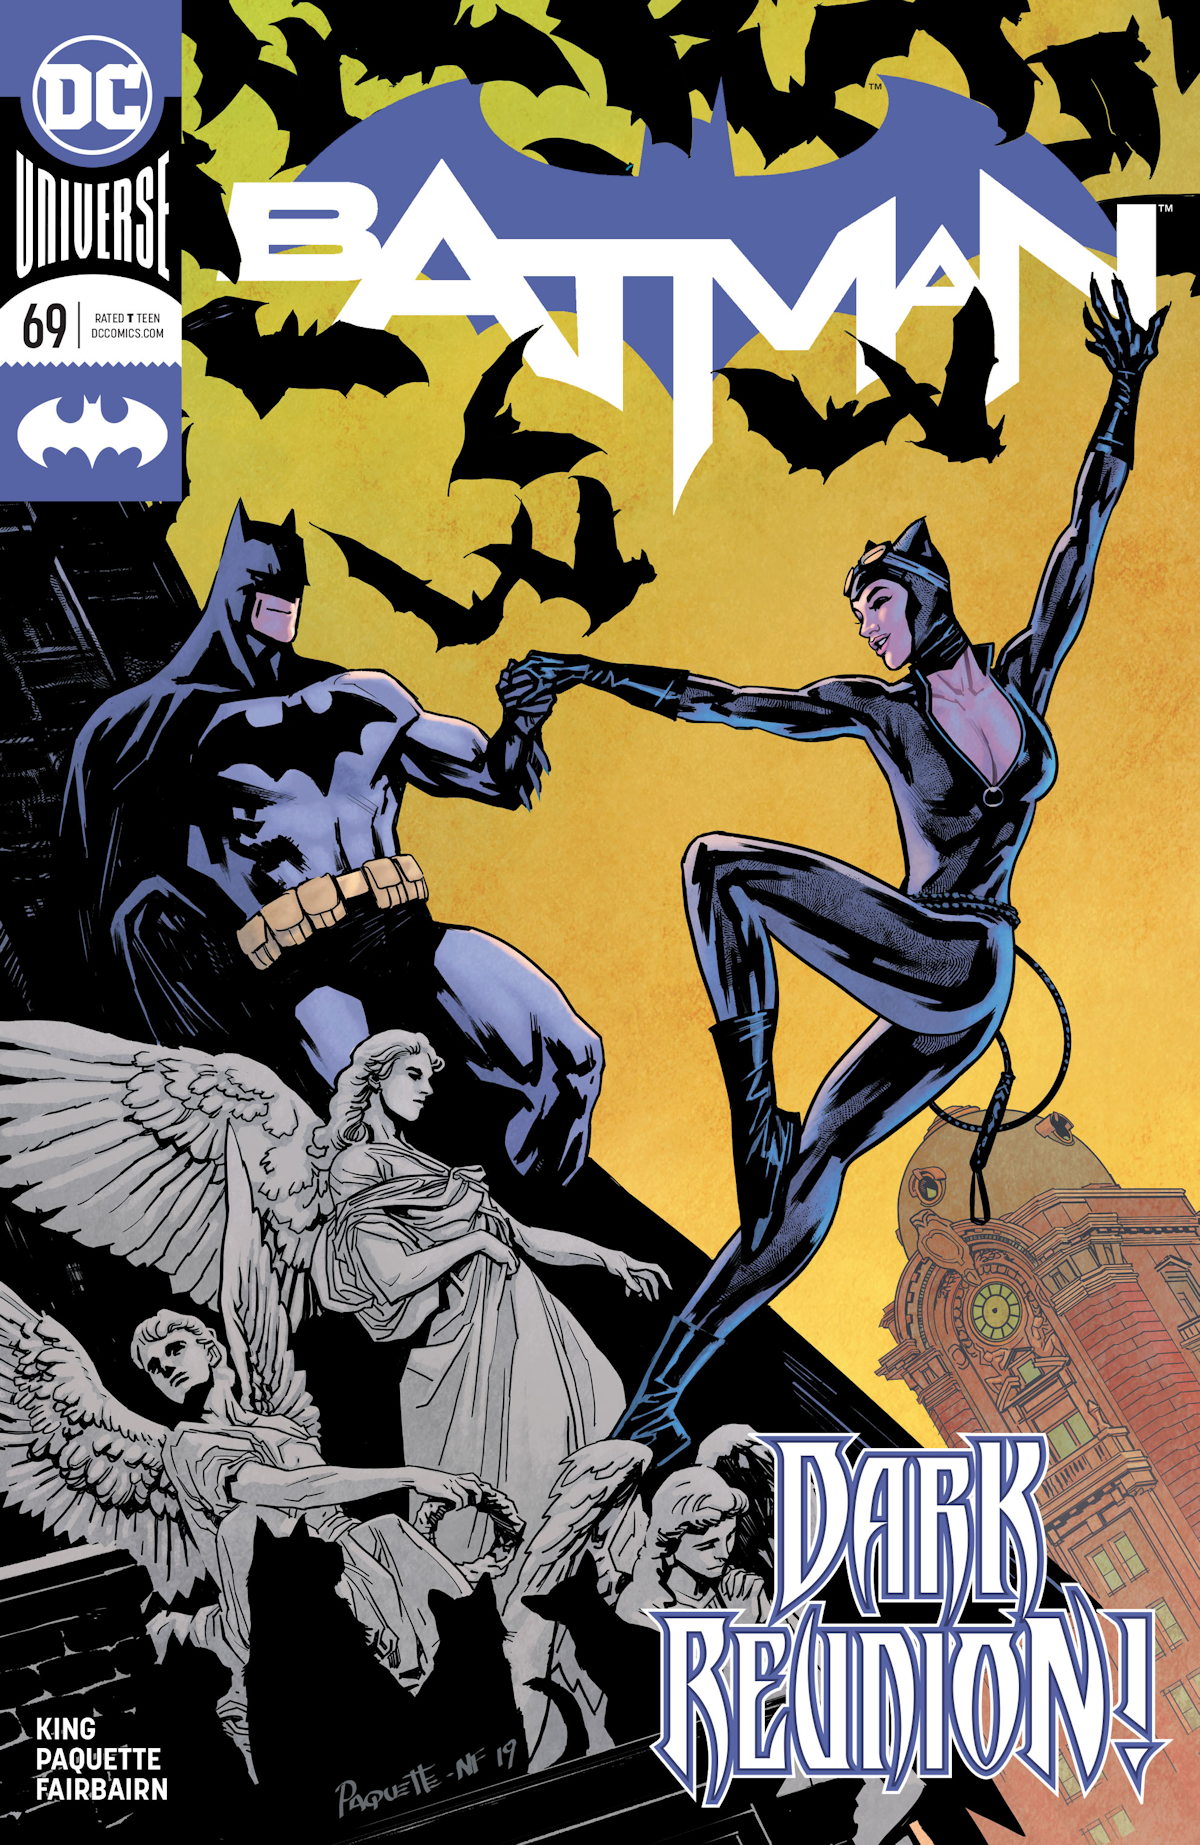 Batman Vol. 3 69 (Cover A)